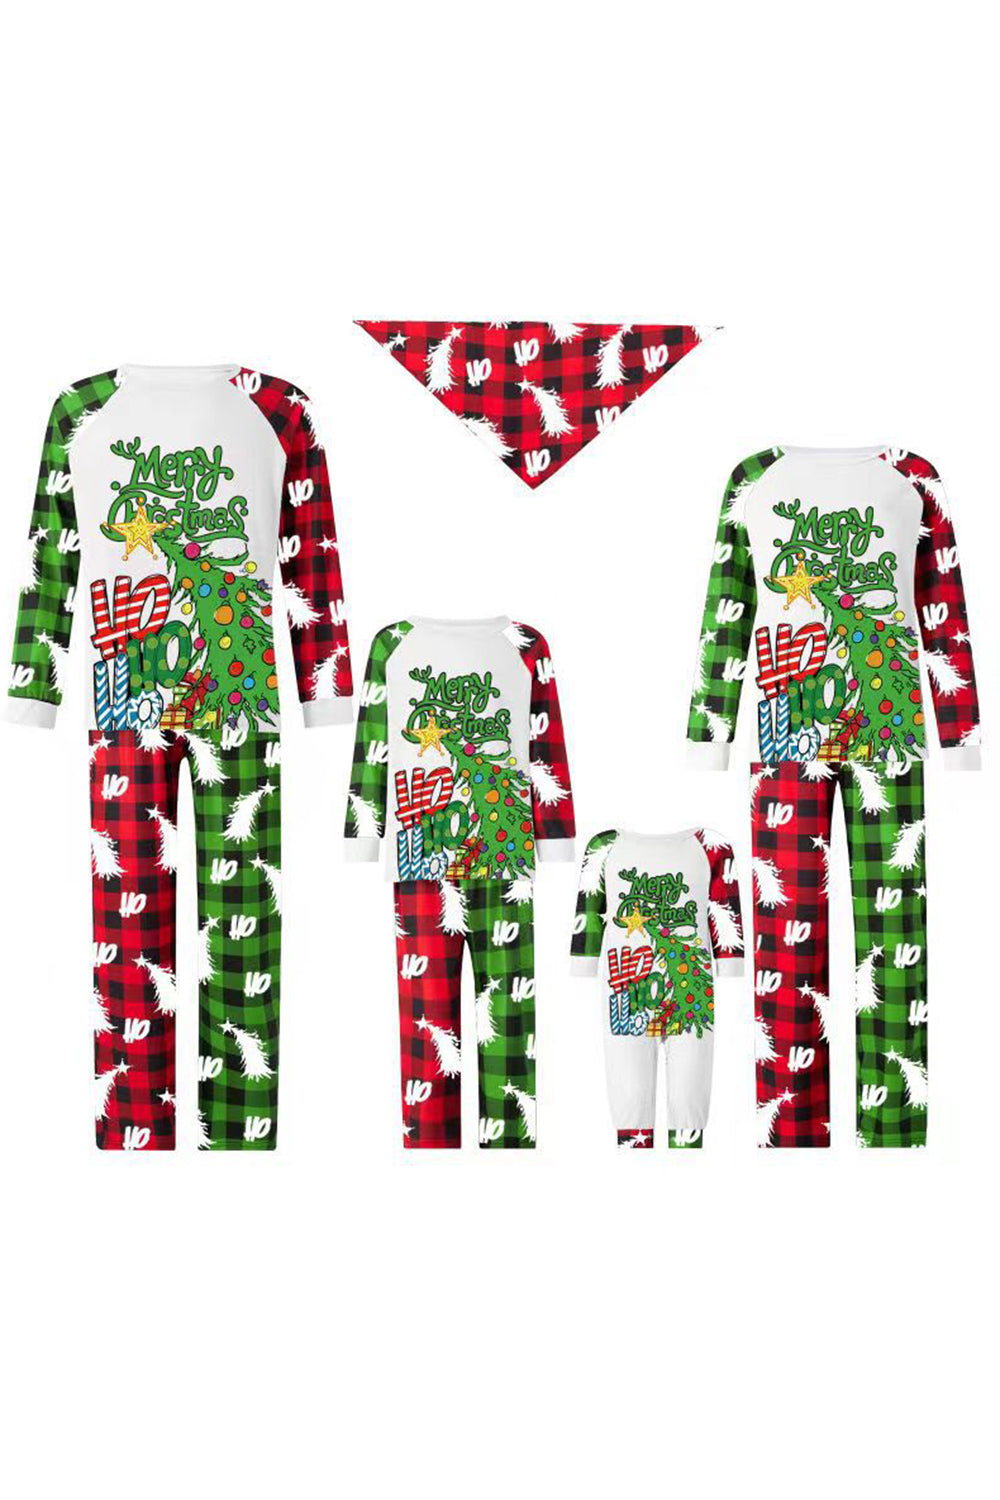 Green Christmas Tree Print Family Pajamas